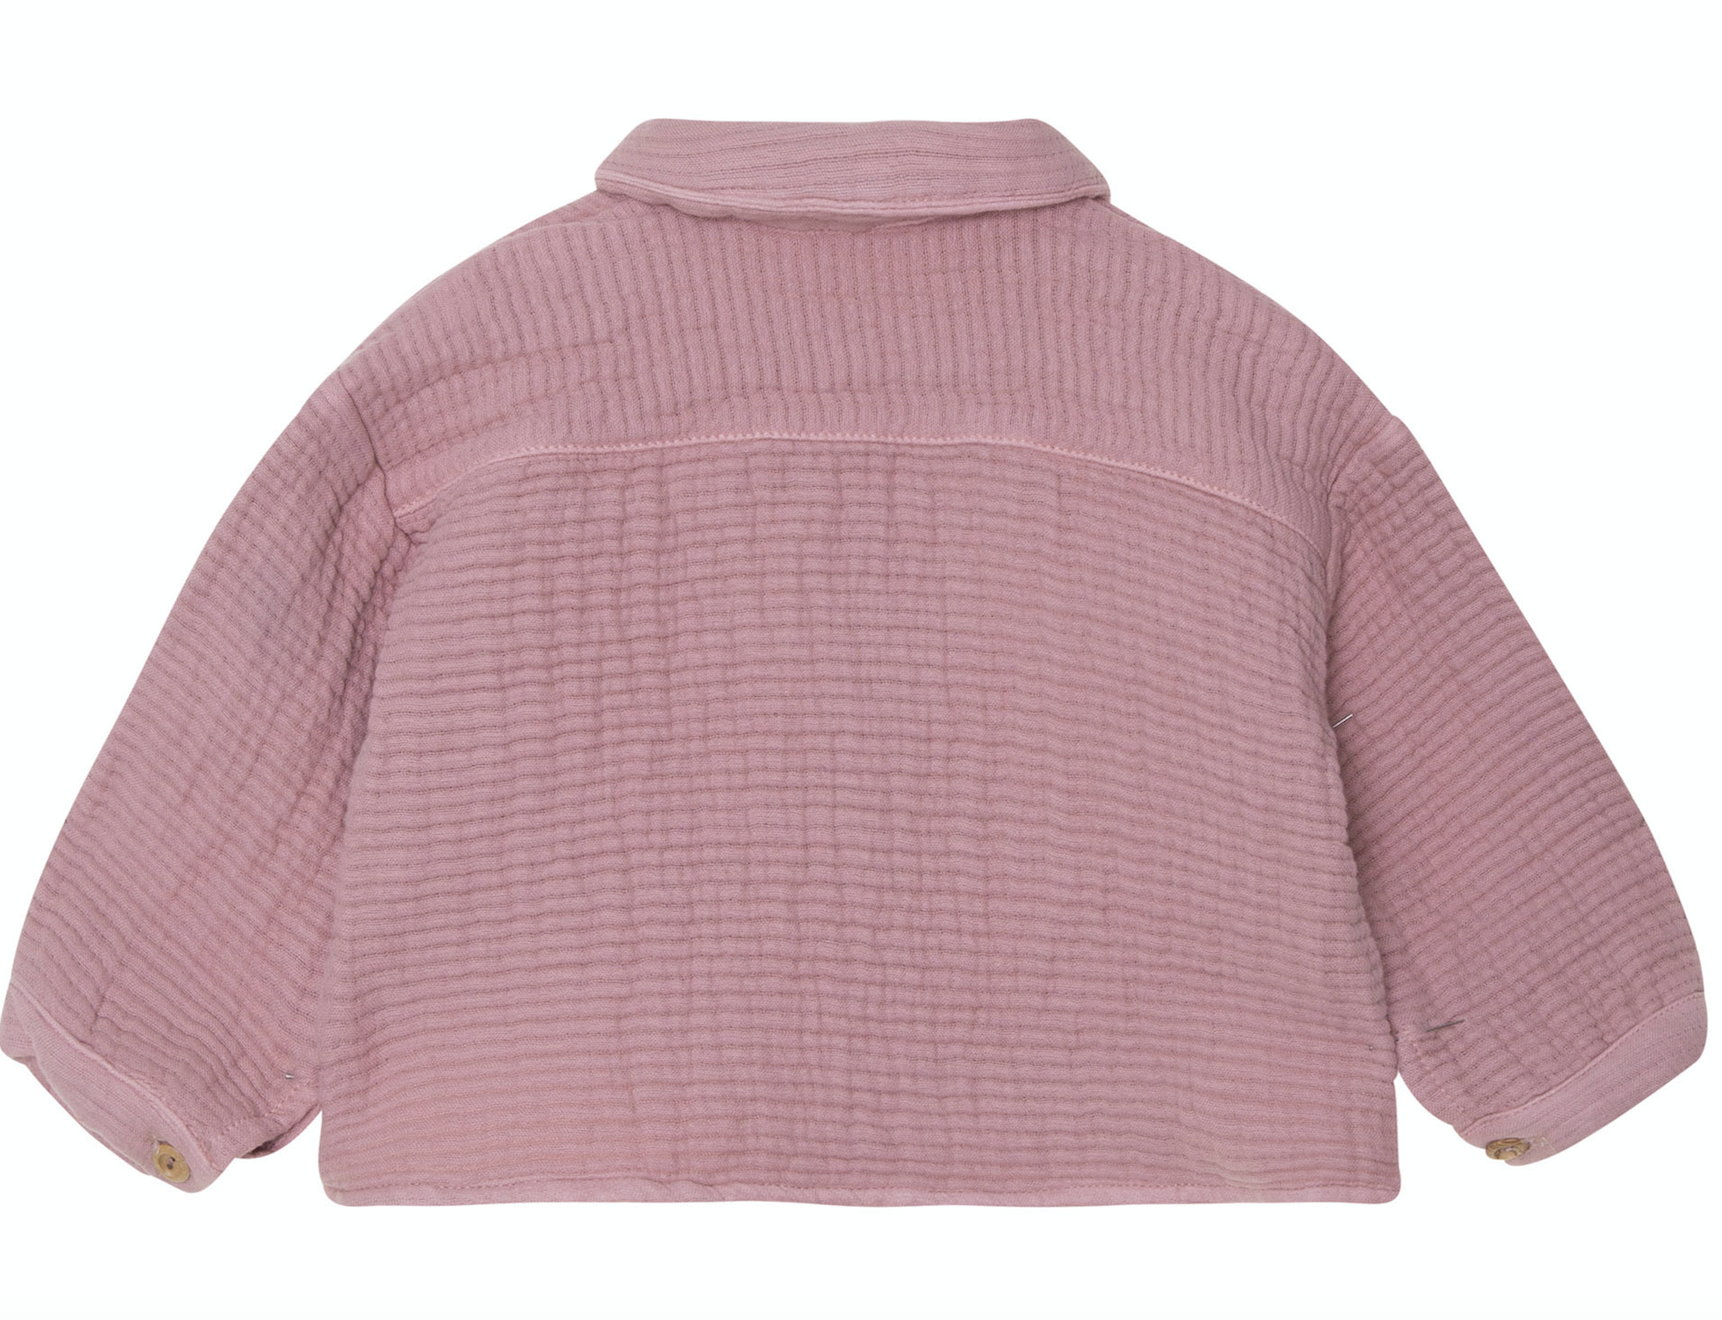                                                                                                                       Soft shirt pink 